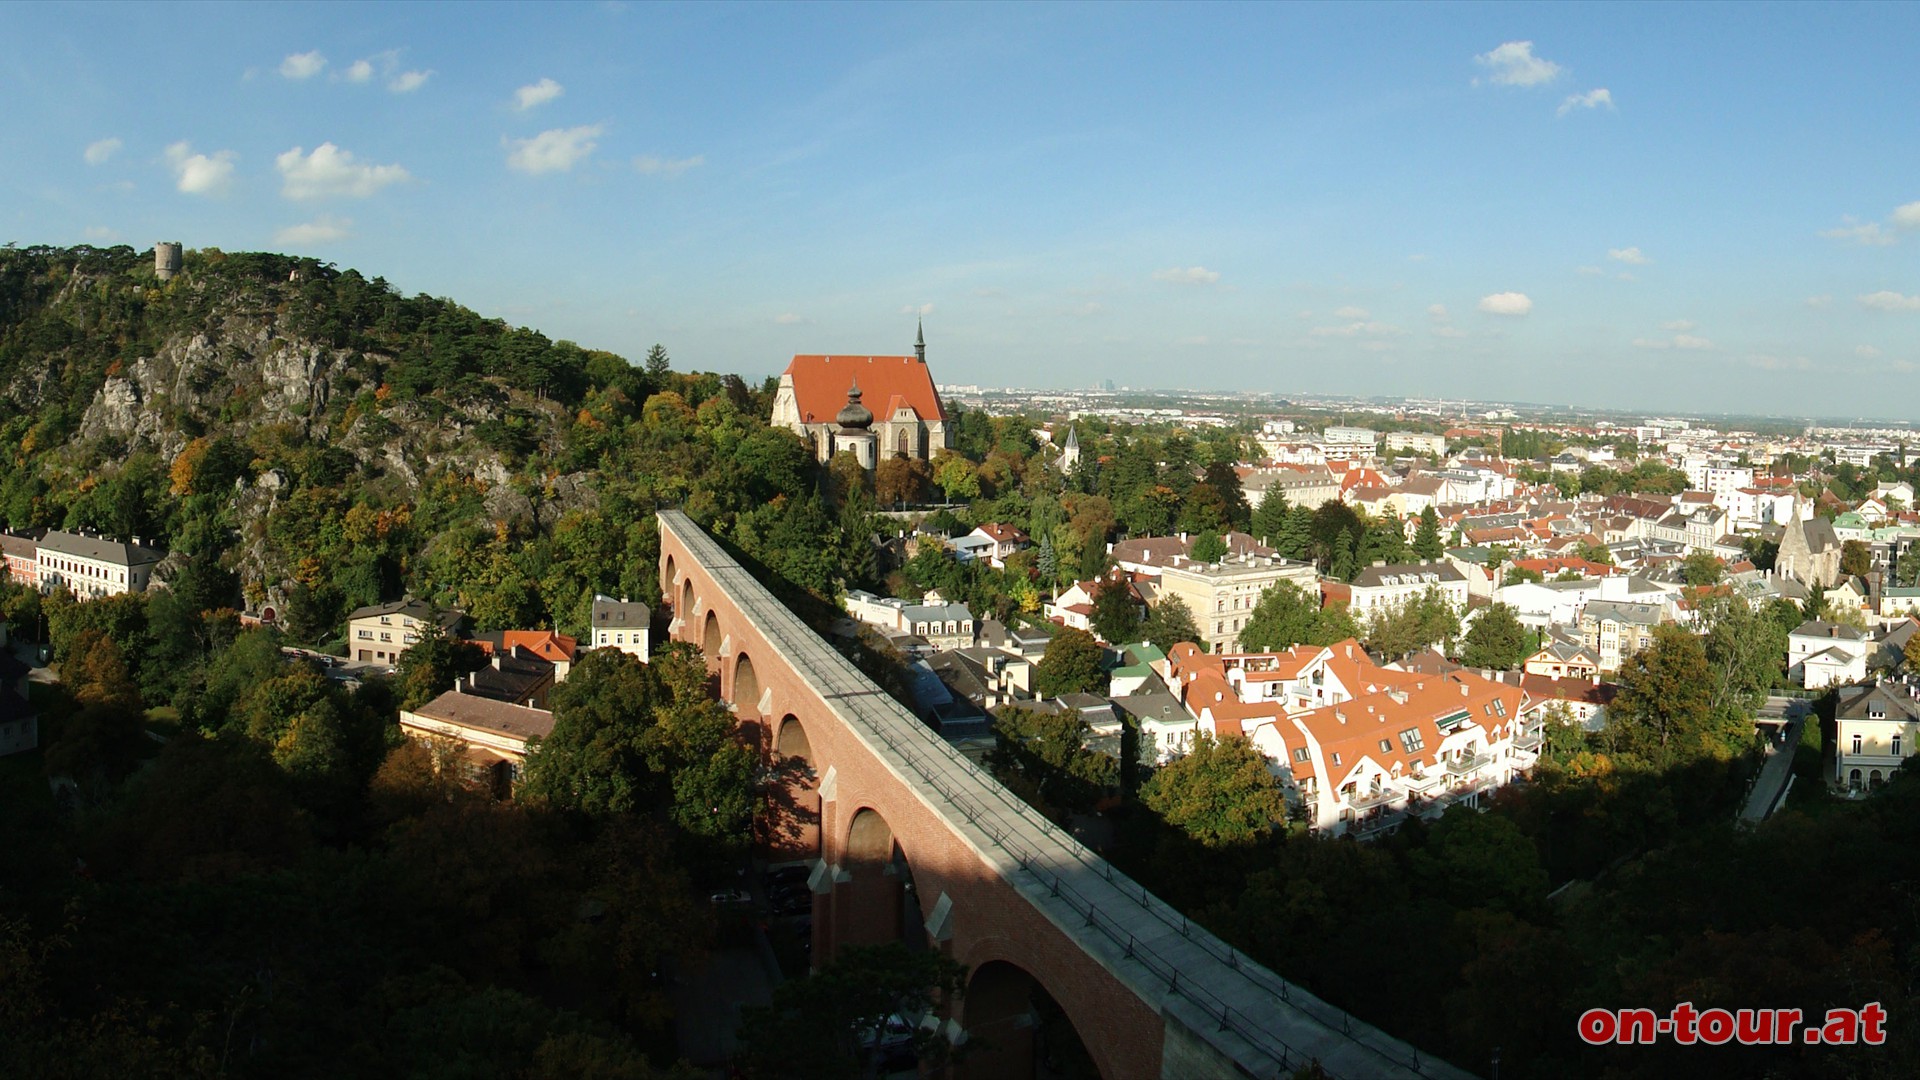 Der Schwarze Turm, der Hochquellleitungs-Aqudukt, die Hallenkirche St. Othmar, die Altstadt von Mdling und die Spitalkirche ganz rechts.